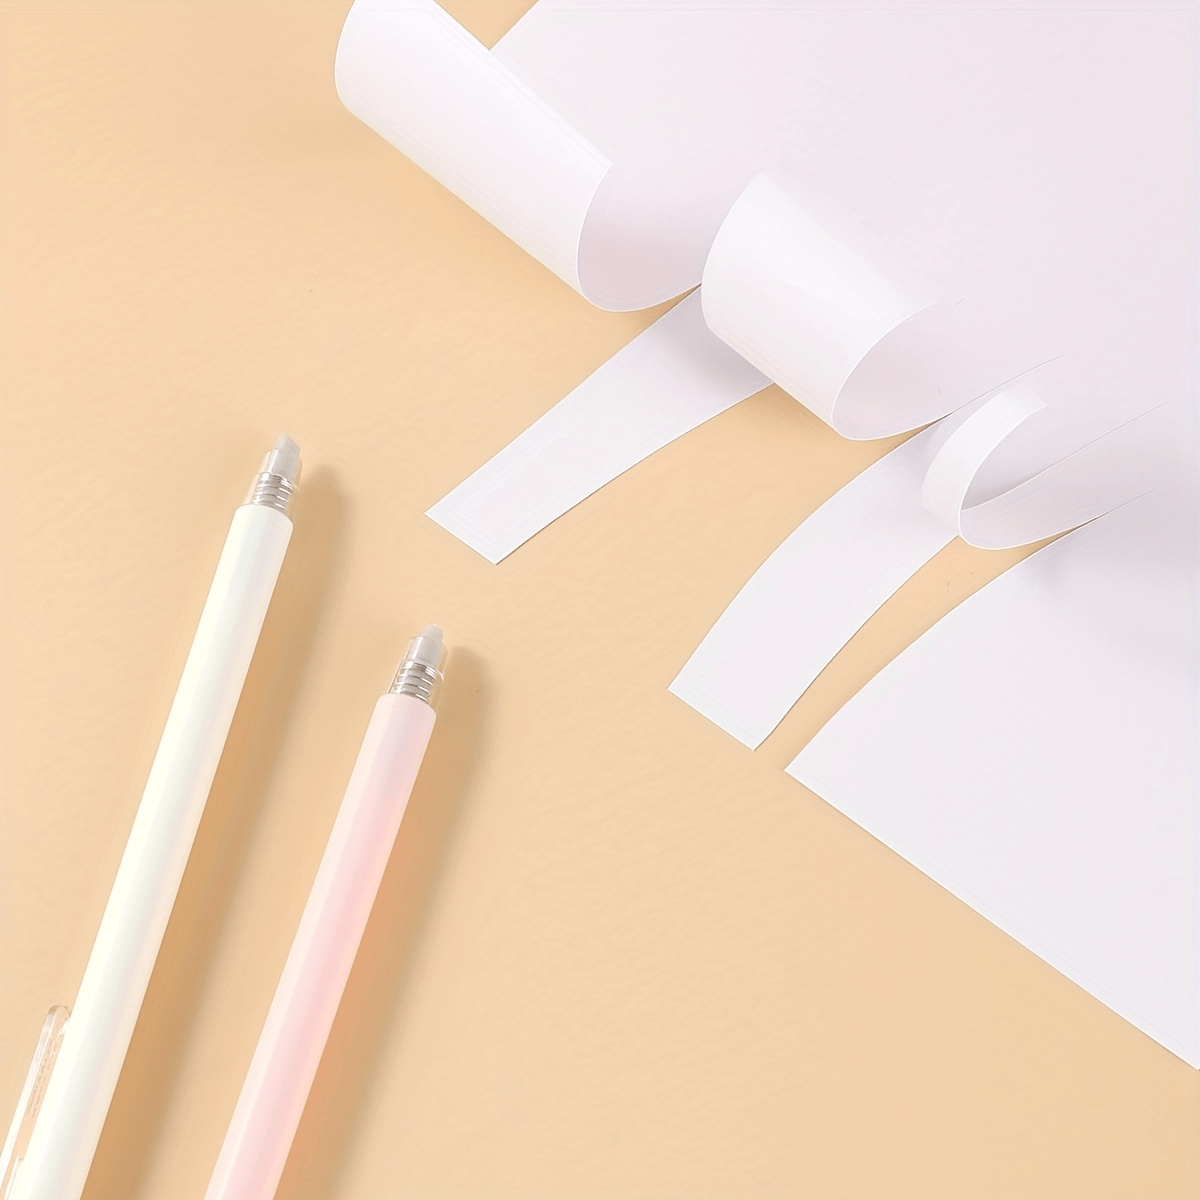 Japan Ceramic Creative Paper Cutter Pen Knife Wearable Durability Ceramic  Pen Cutter Cutting Paper for Crafts Notebook DIY Stati - AliExpress